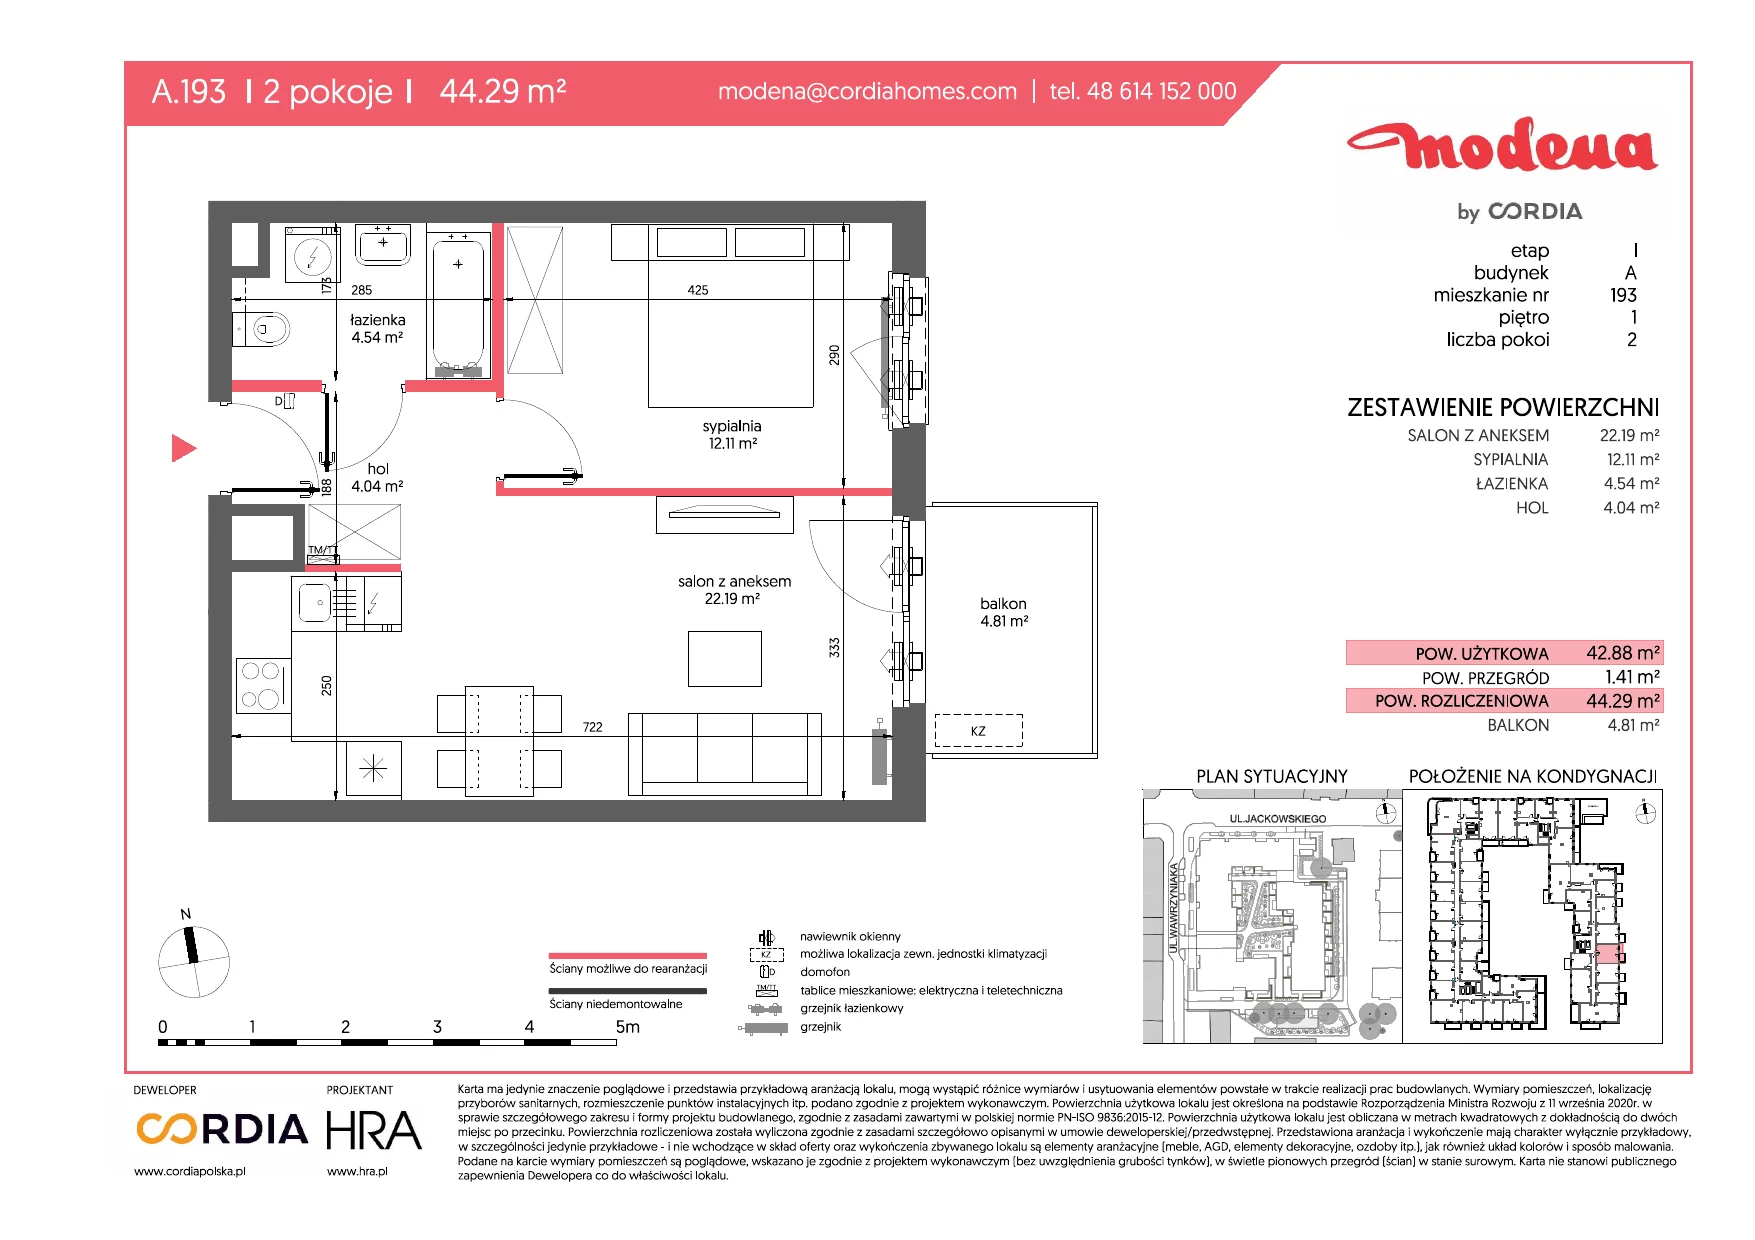 Mieszkanie 44,29 m², piętro 1, oferta nr A.193, Modena, Poznań, Jeżyce, Jeżyce, ul. Jackowskiego 24